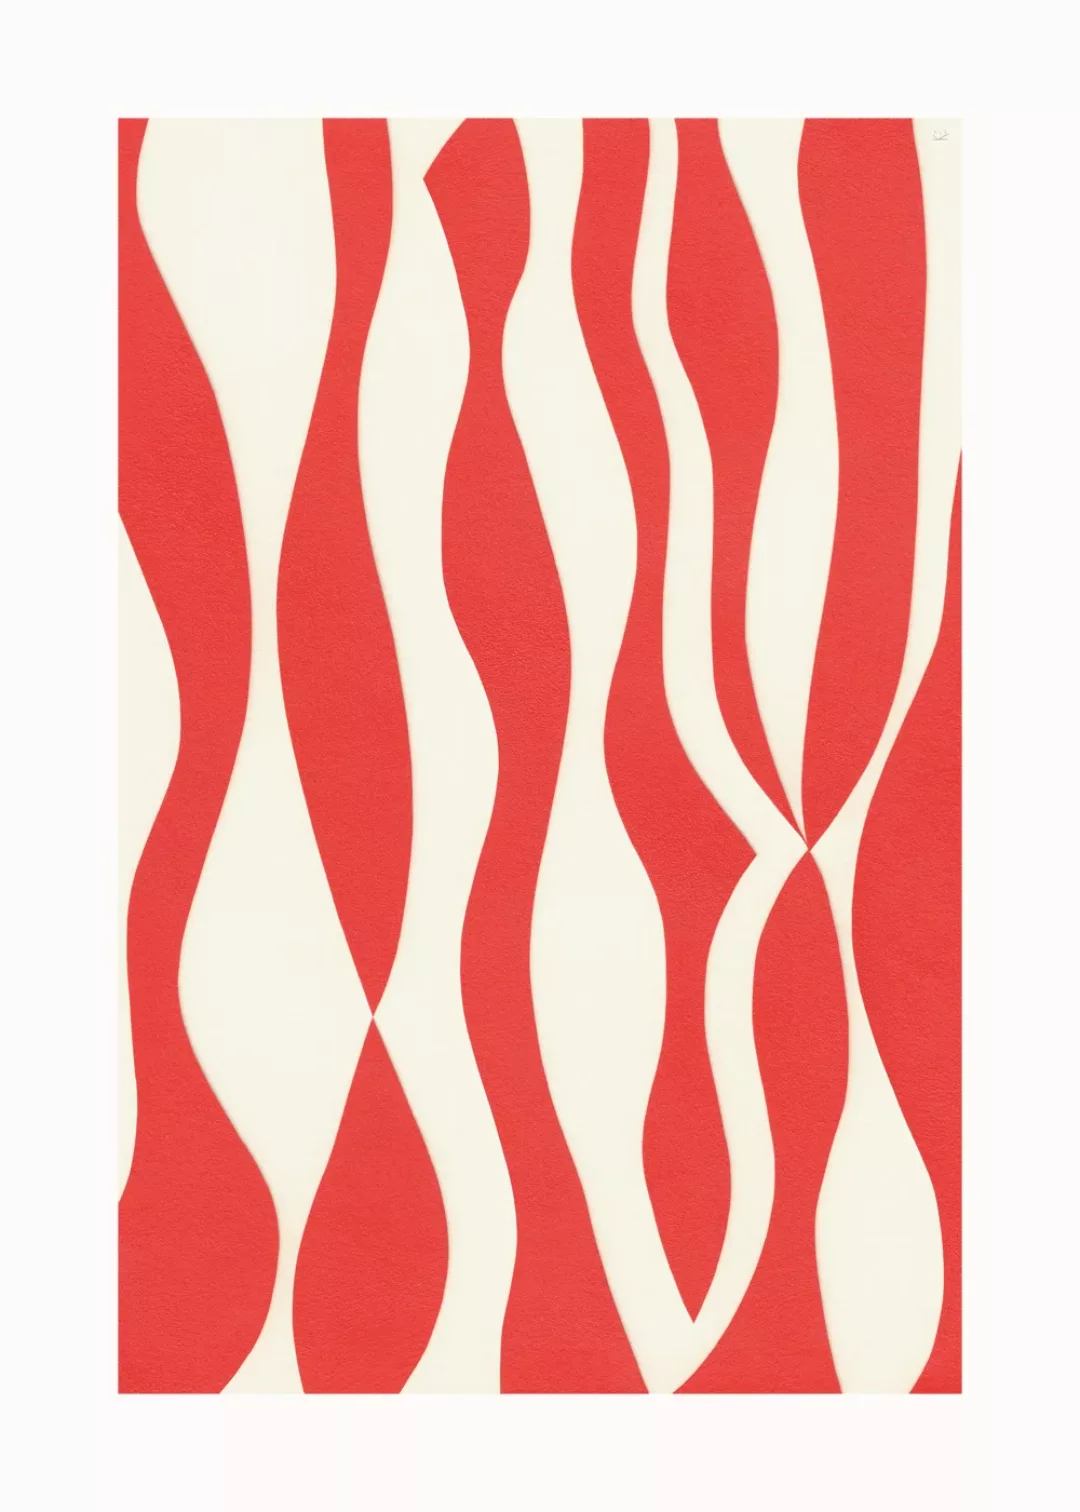 Paper Collective - Mirror Kunstdruck 50x70cm - rot, weiß/BxH 50x70cm günstig online kaufen